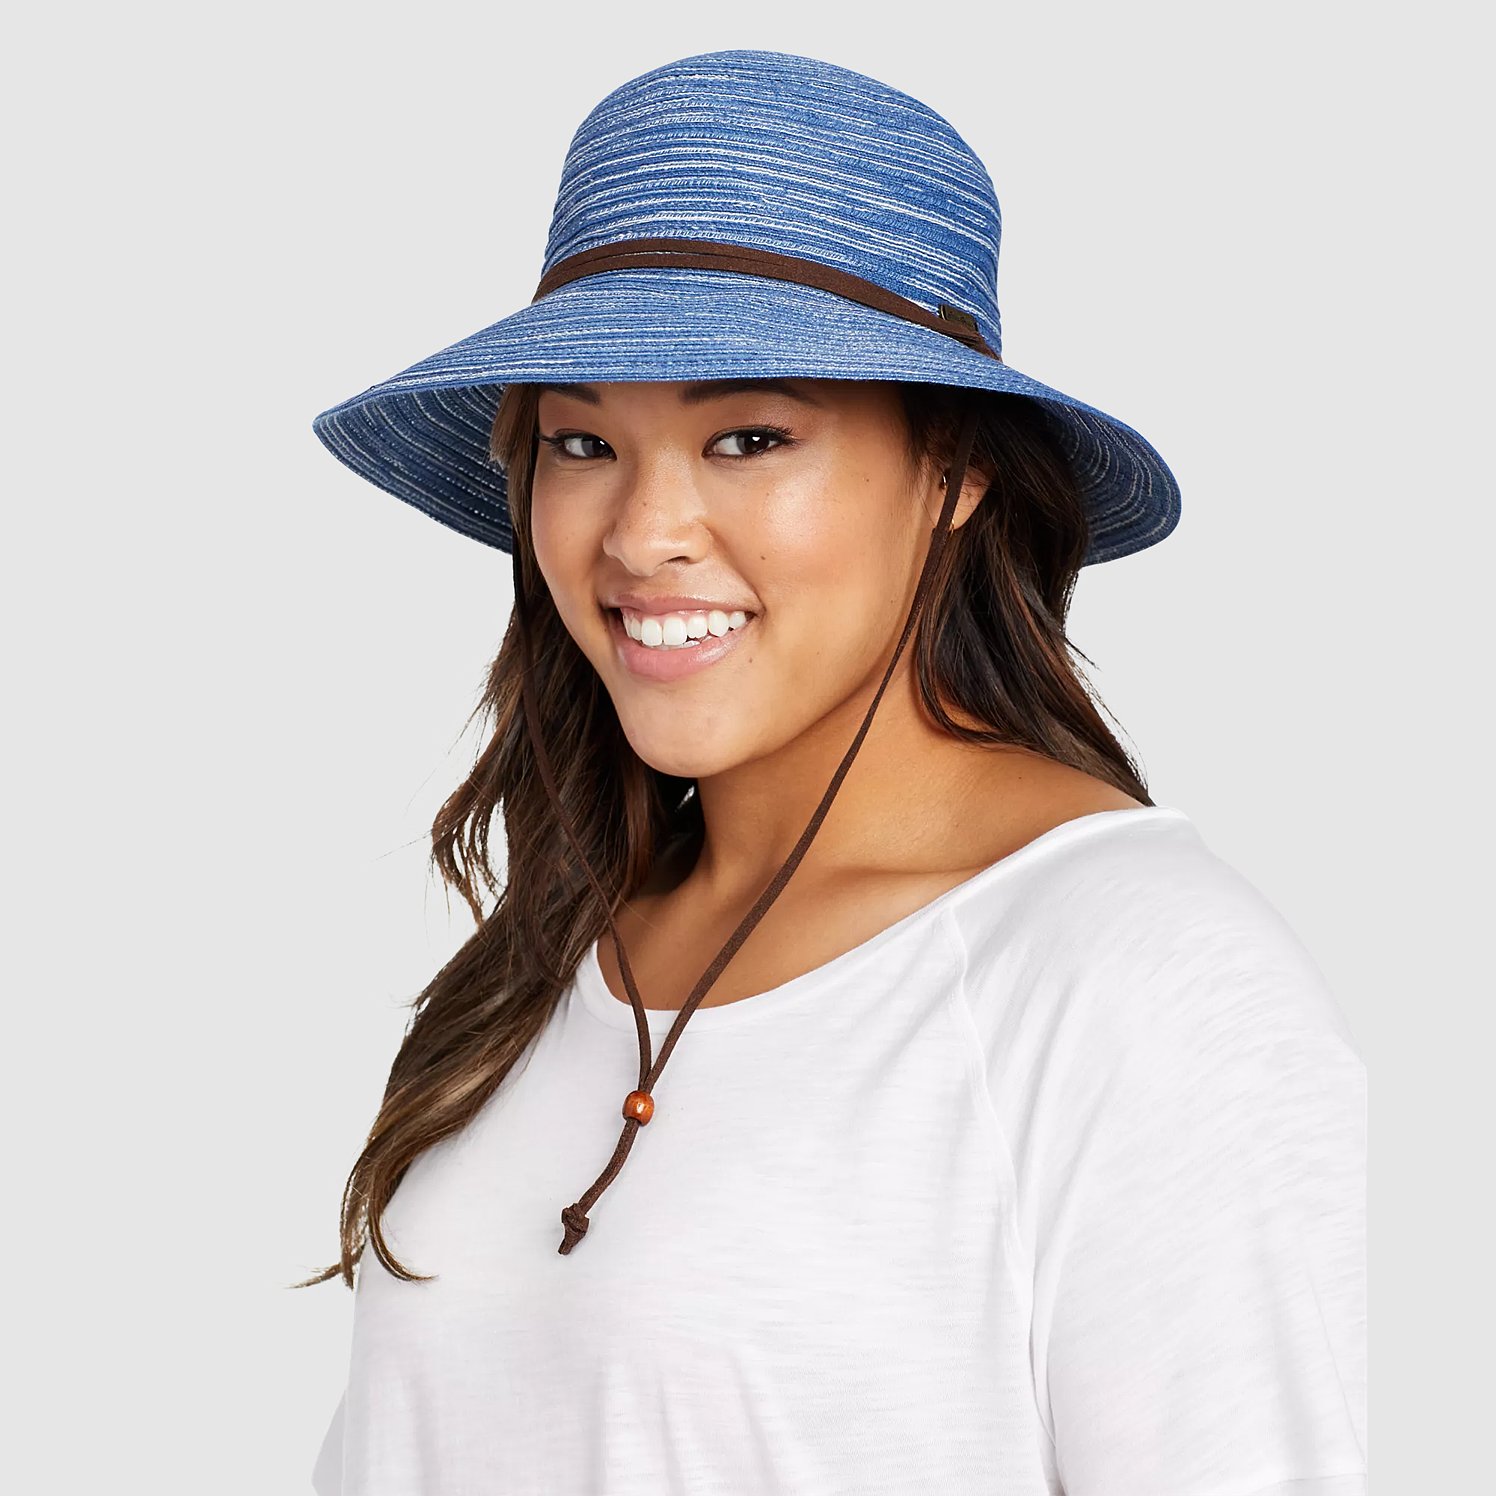 Eddie Bauer Women's Packable Straw Hat - Wide Brim - Teal - S/M